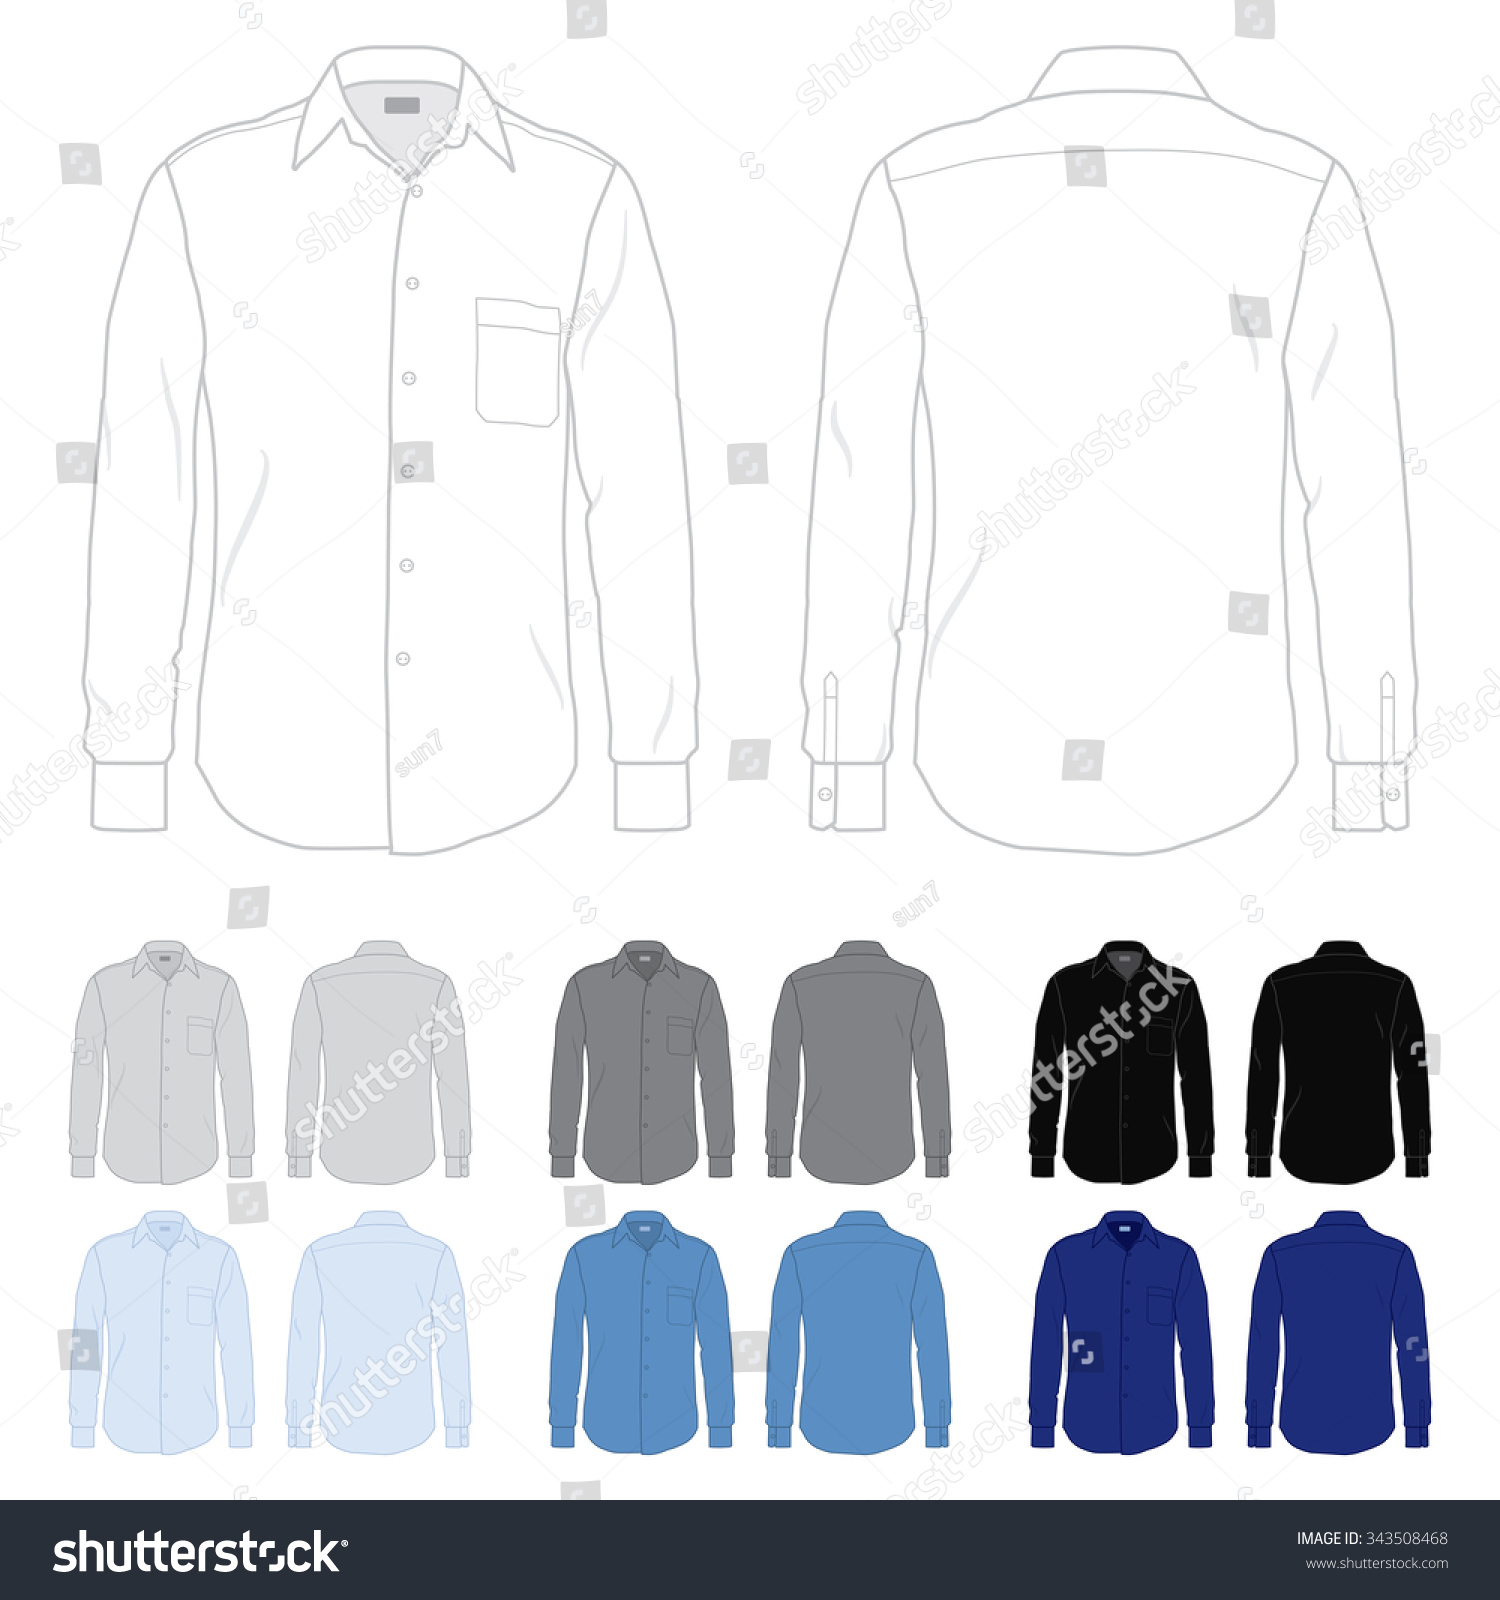 Mens Button Down Dress Shirt Template Stock Vector 343508468 - Shutterstock